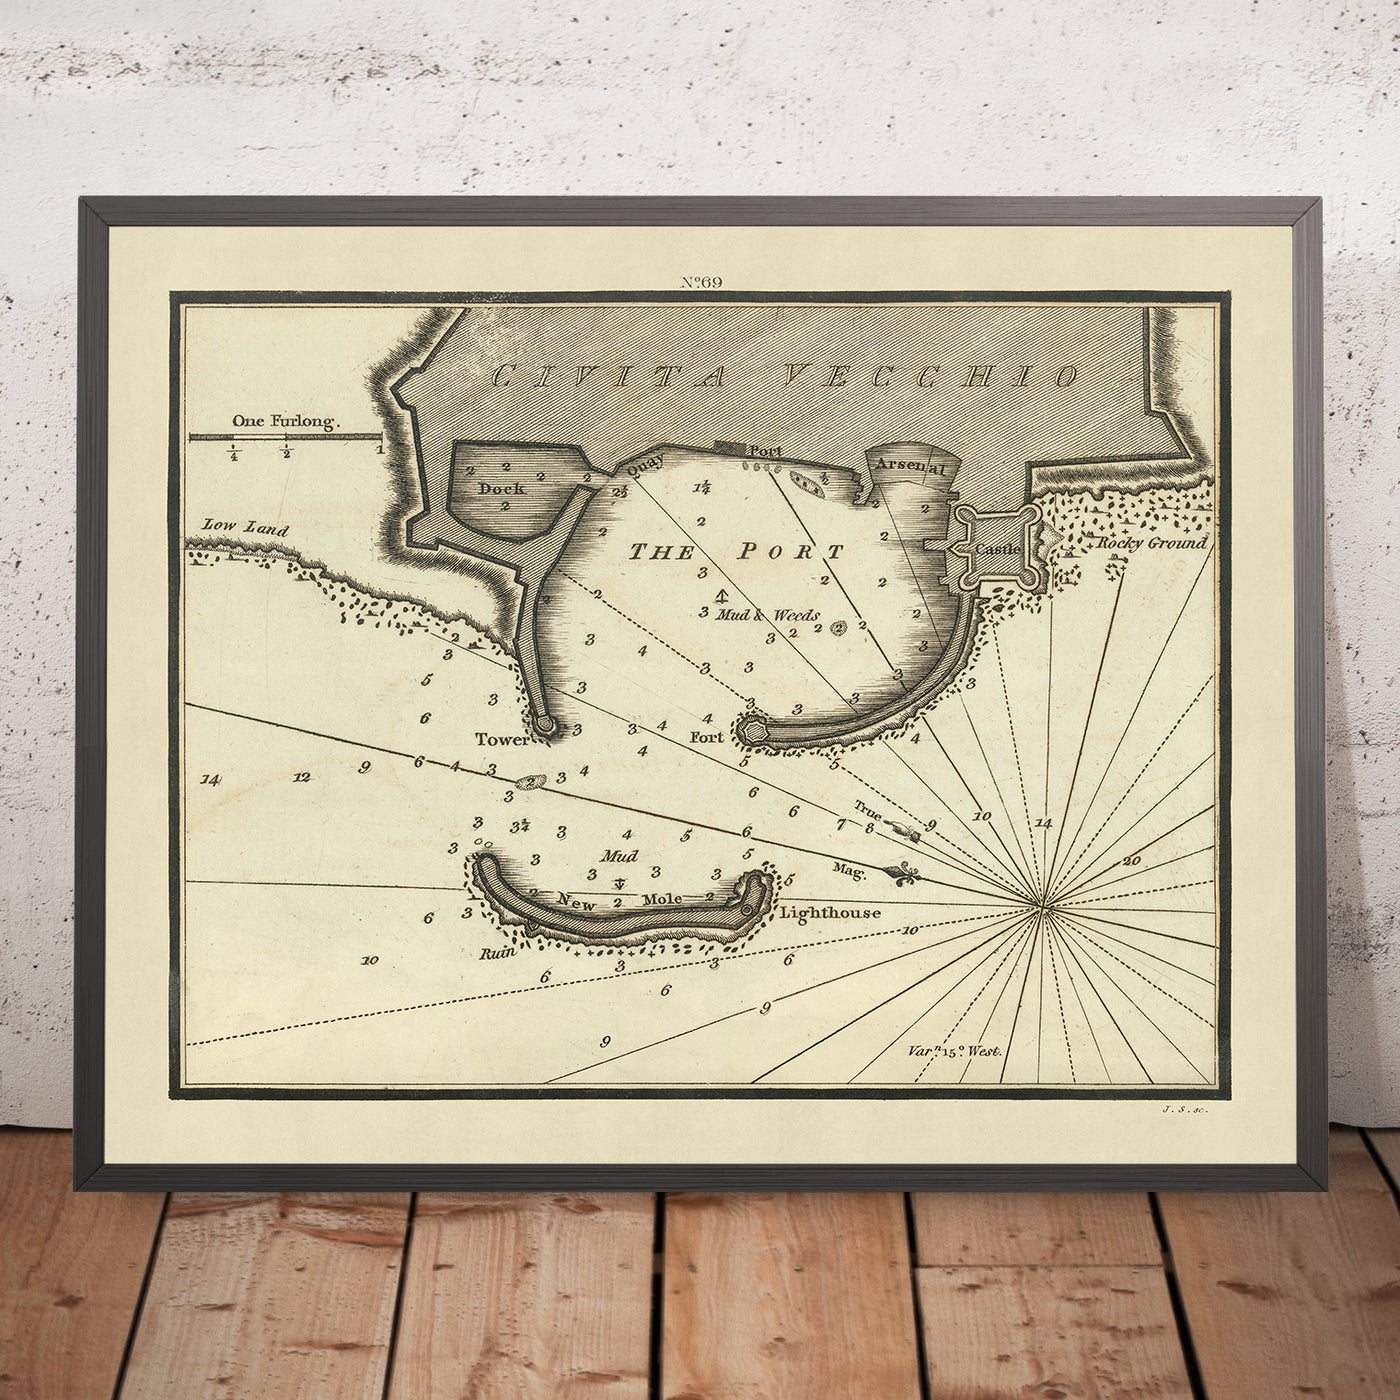 Alte Seekarte von Civitavecchia von Heather, 1802: Hafen, Burg, Leuchtturm